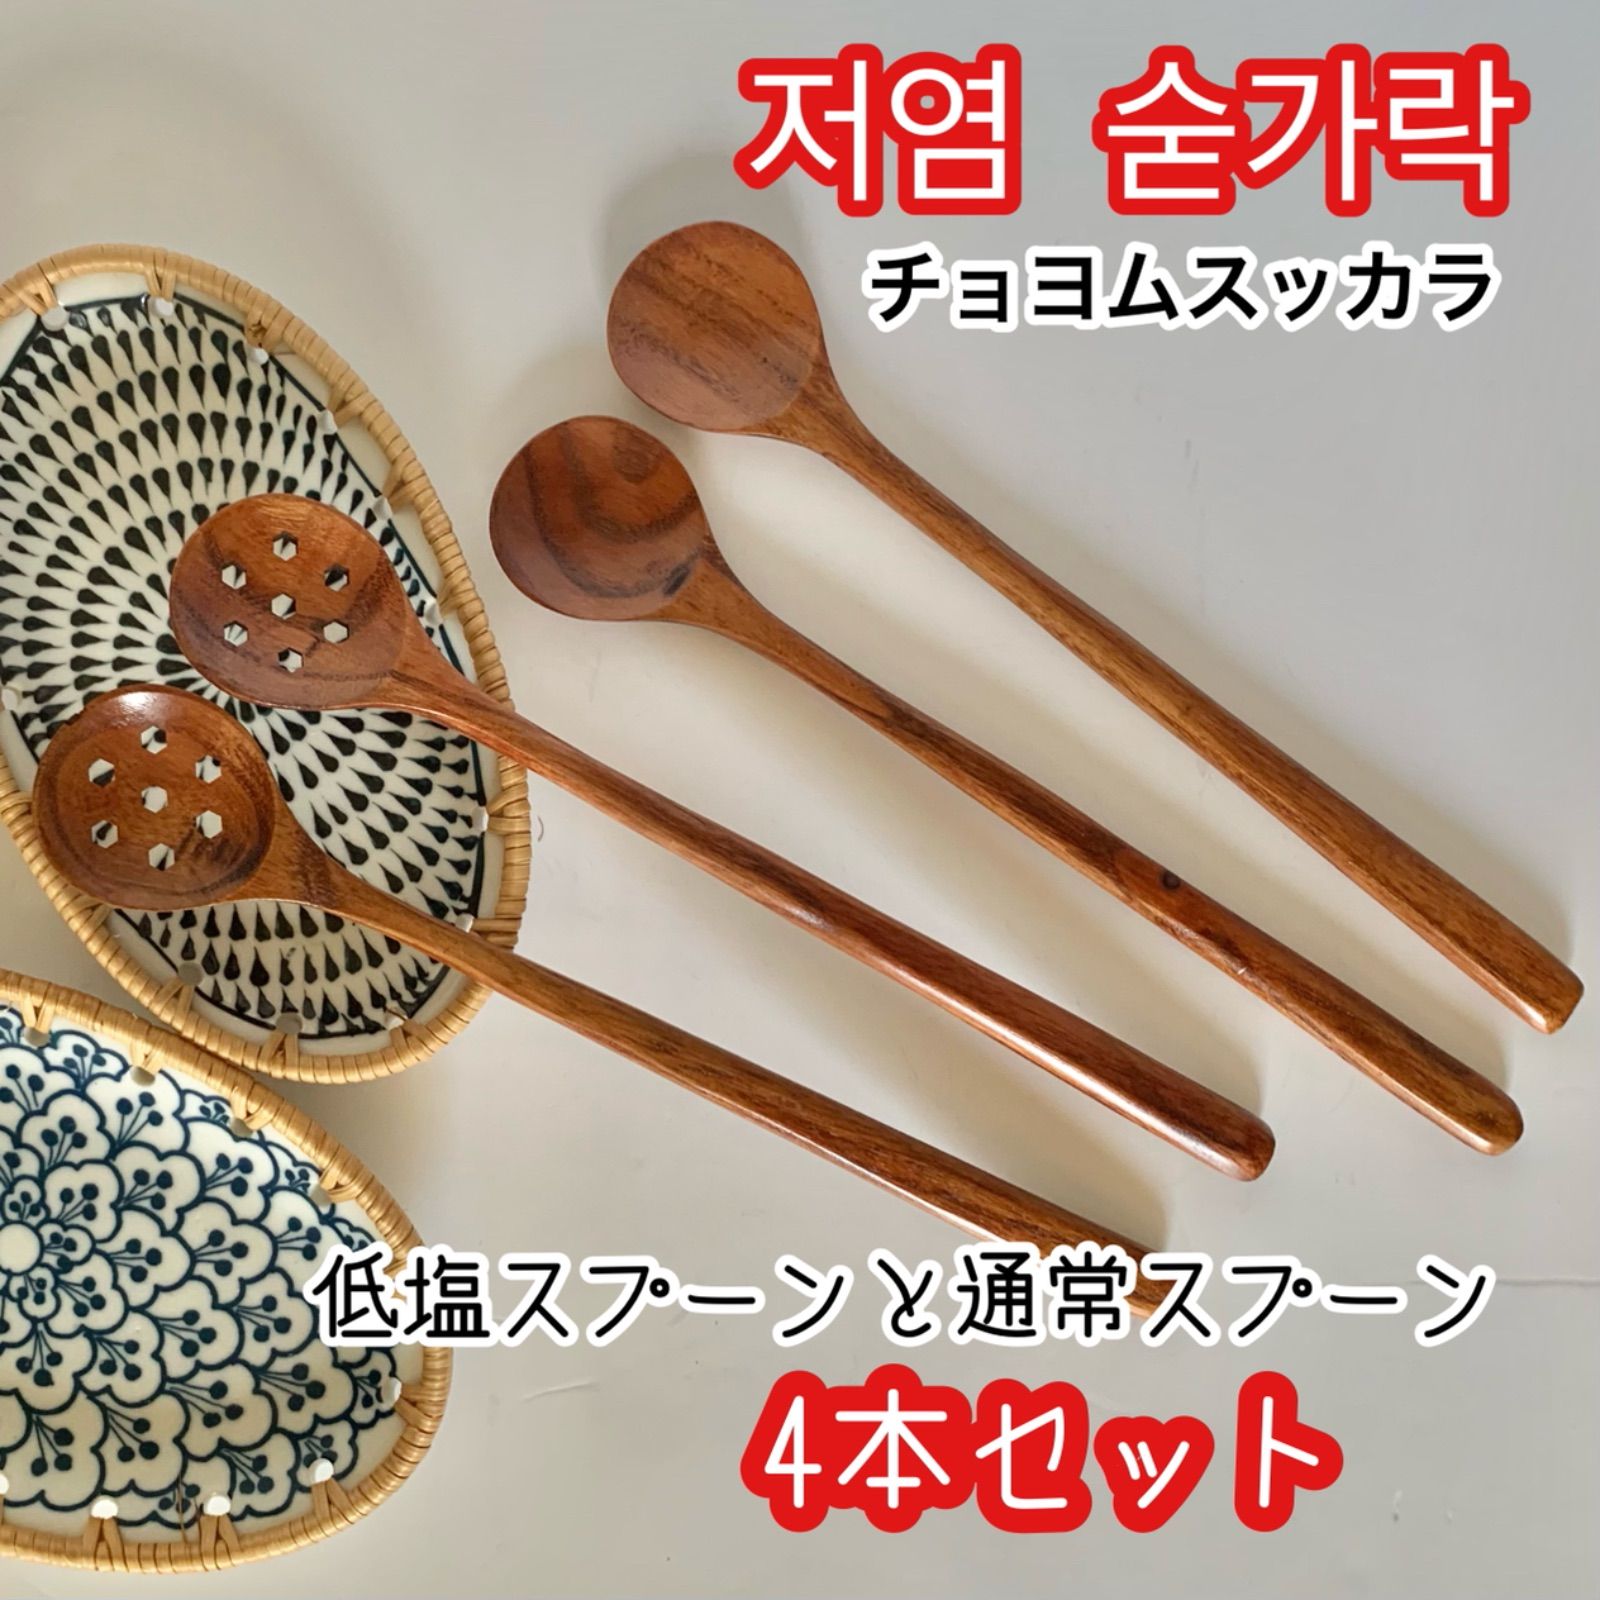 メルカリShops - 韓国 スプーン スッカラ 穴あき 4本セット スンドゥブ チゲ鍋